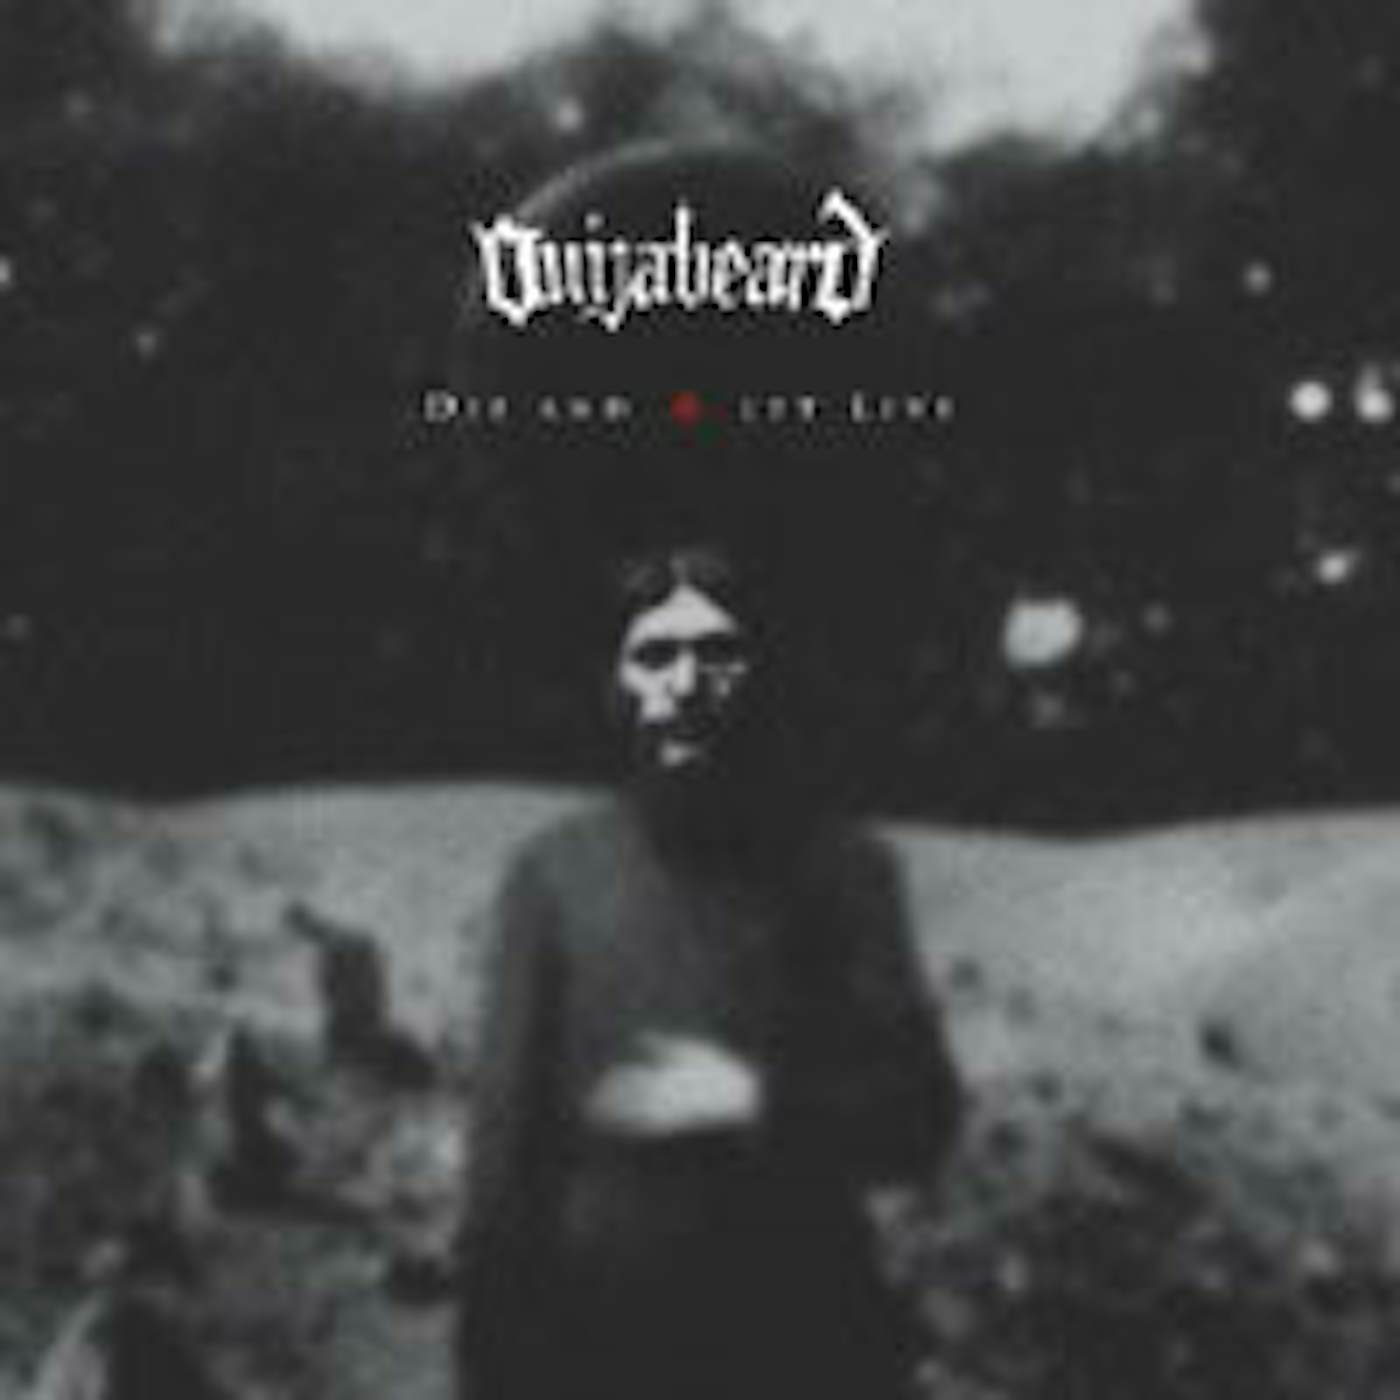 Ouijabeard LP - Die And Let Live (Vinyl)